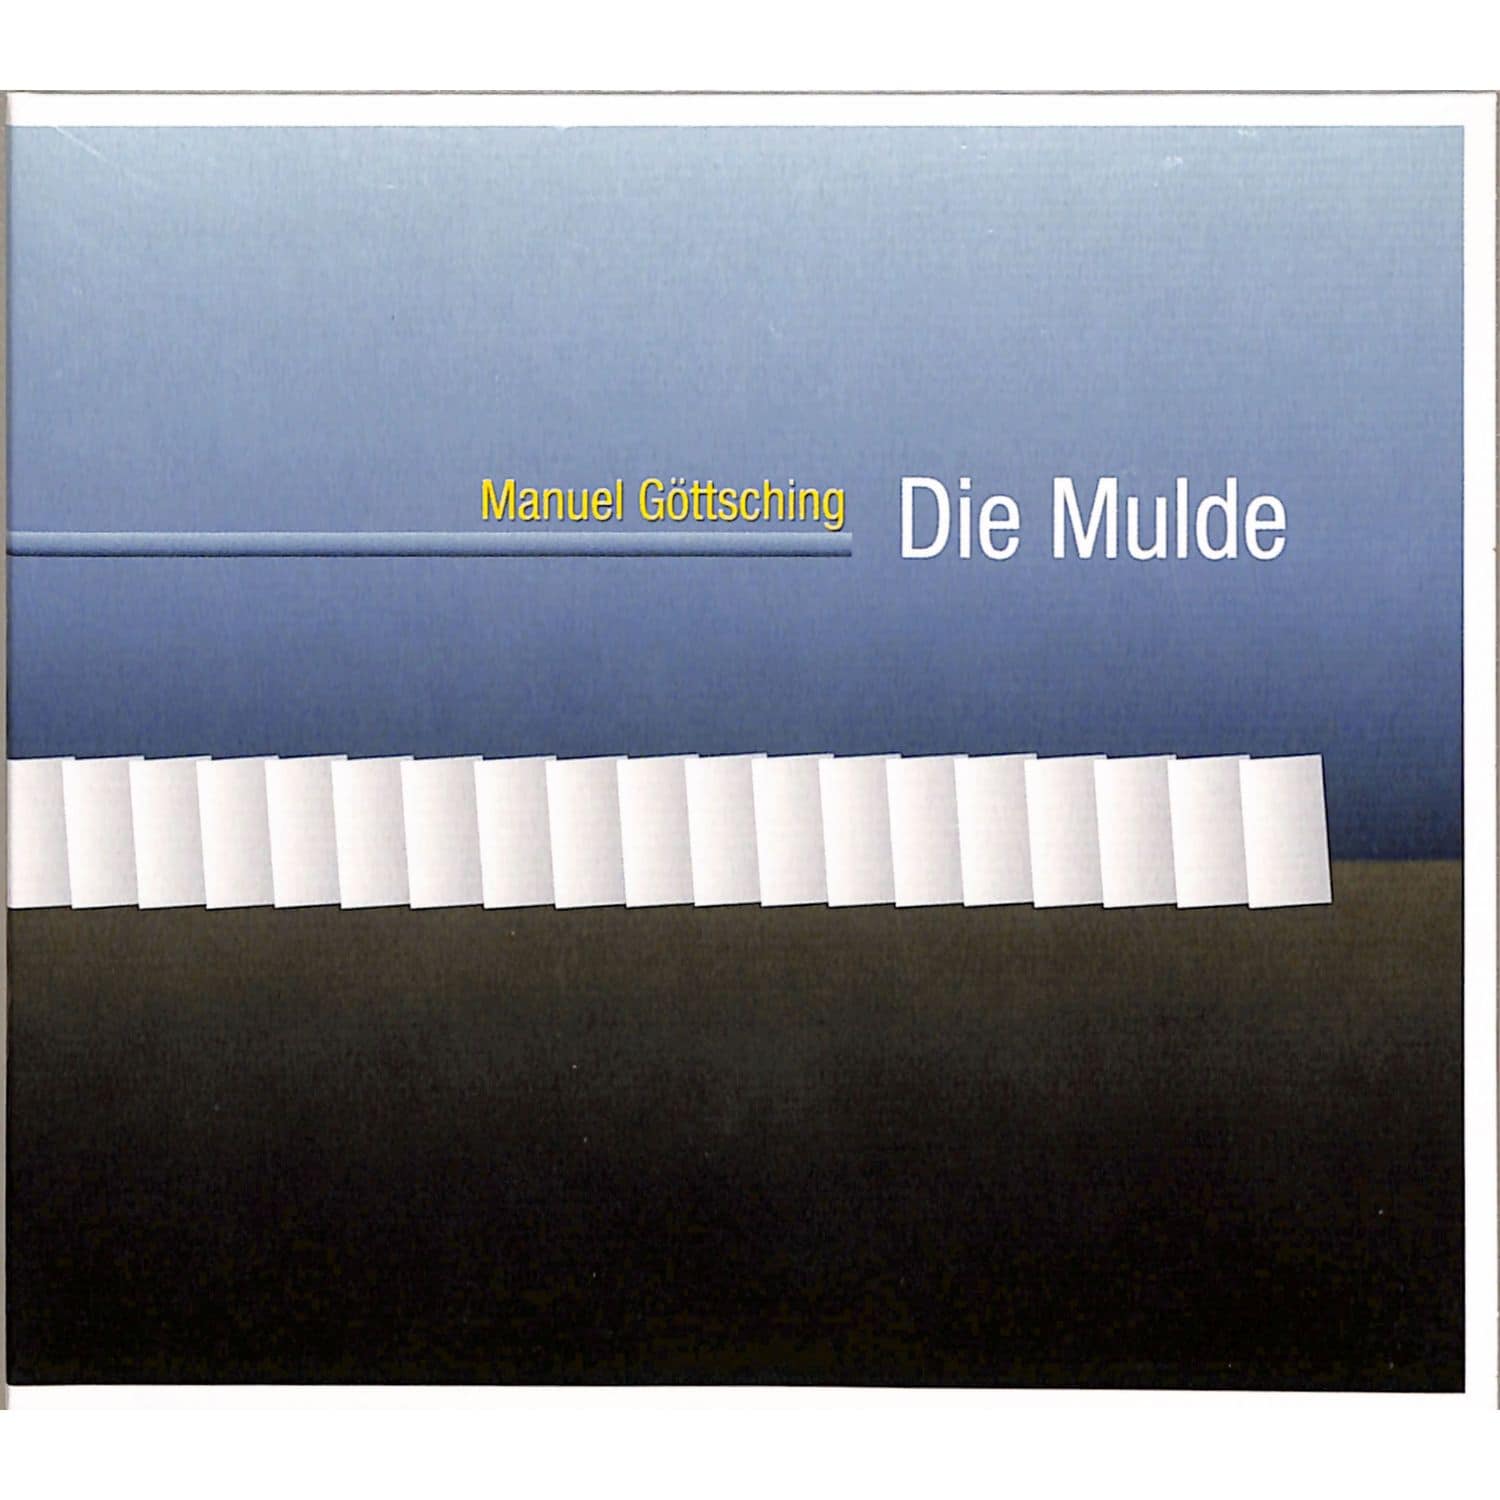 Manuel Gttsching - DIE MULDE 